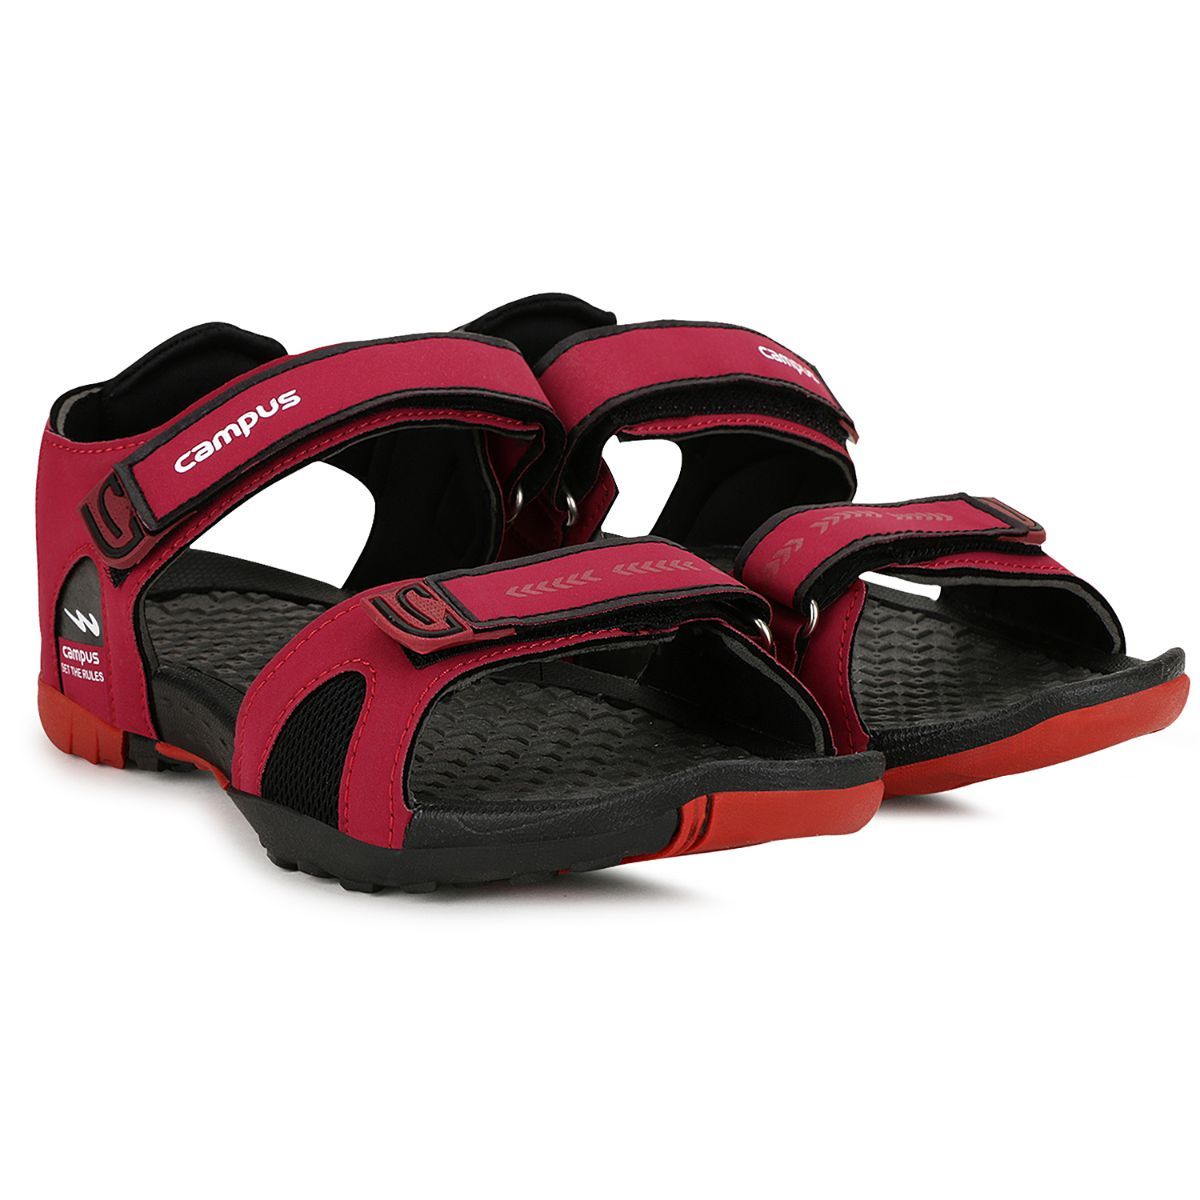 Buy Sandals For Men: Gc-21-Gc-21Mhrn-Blk1049 | Campus Shoes